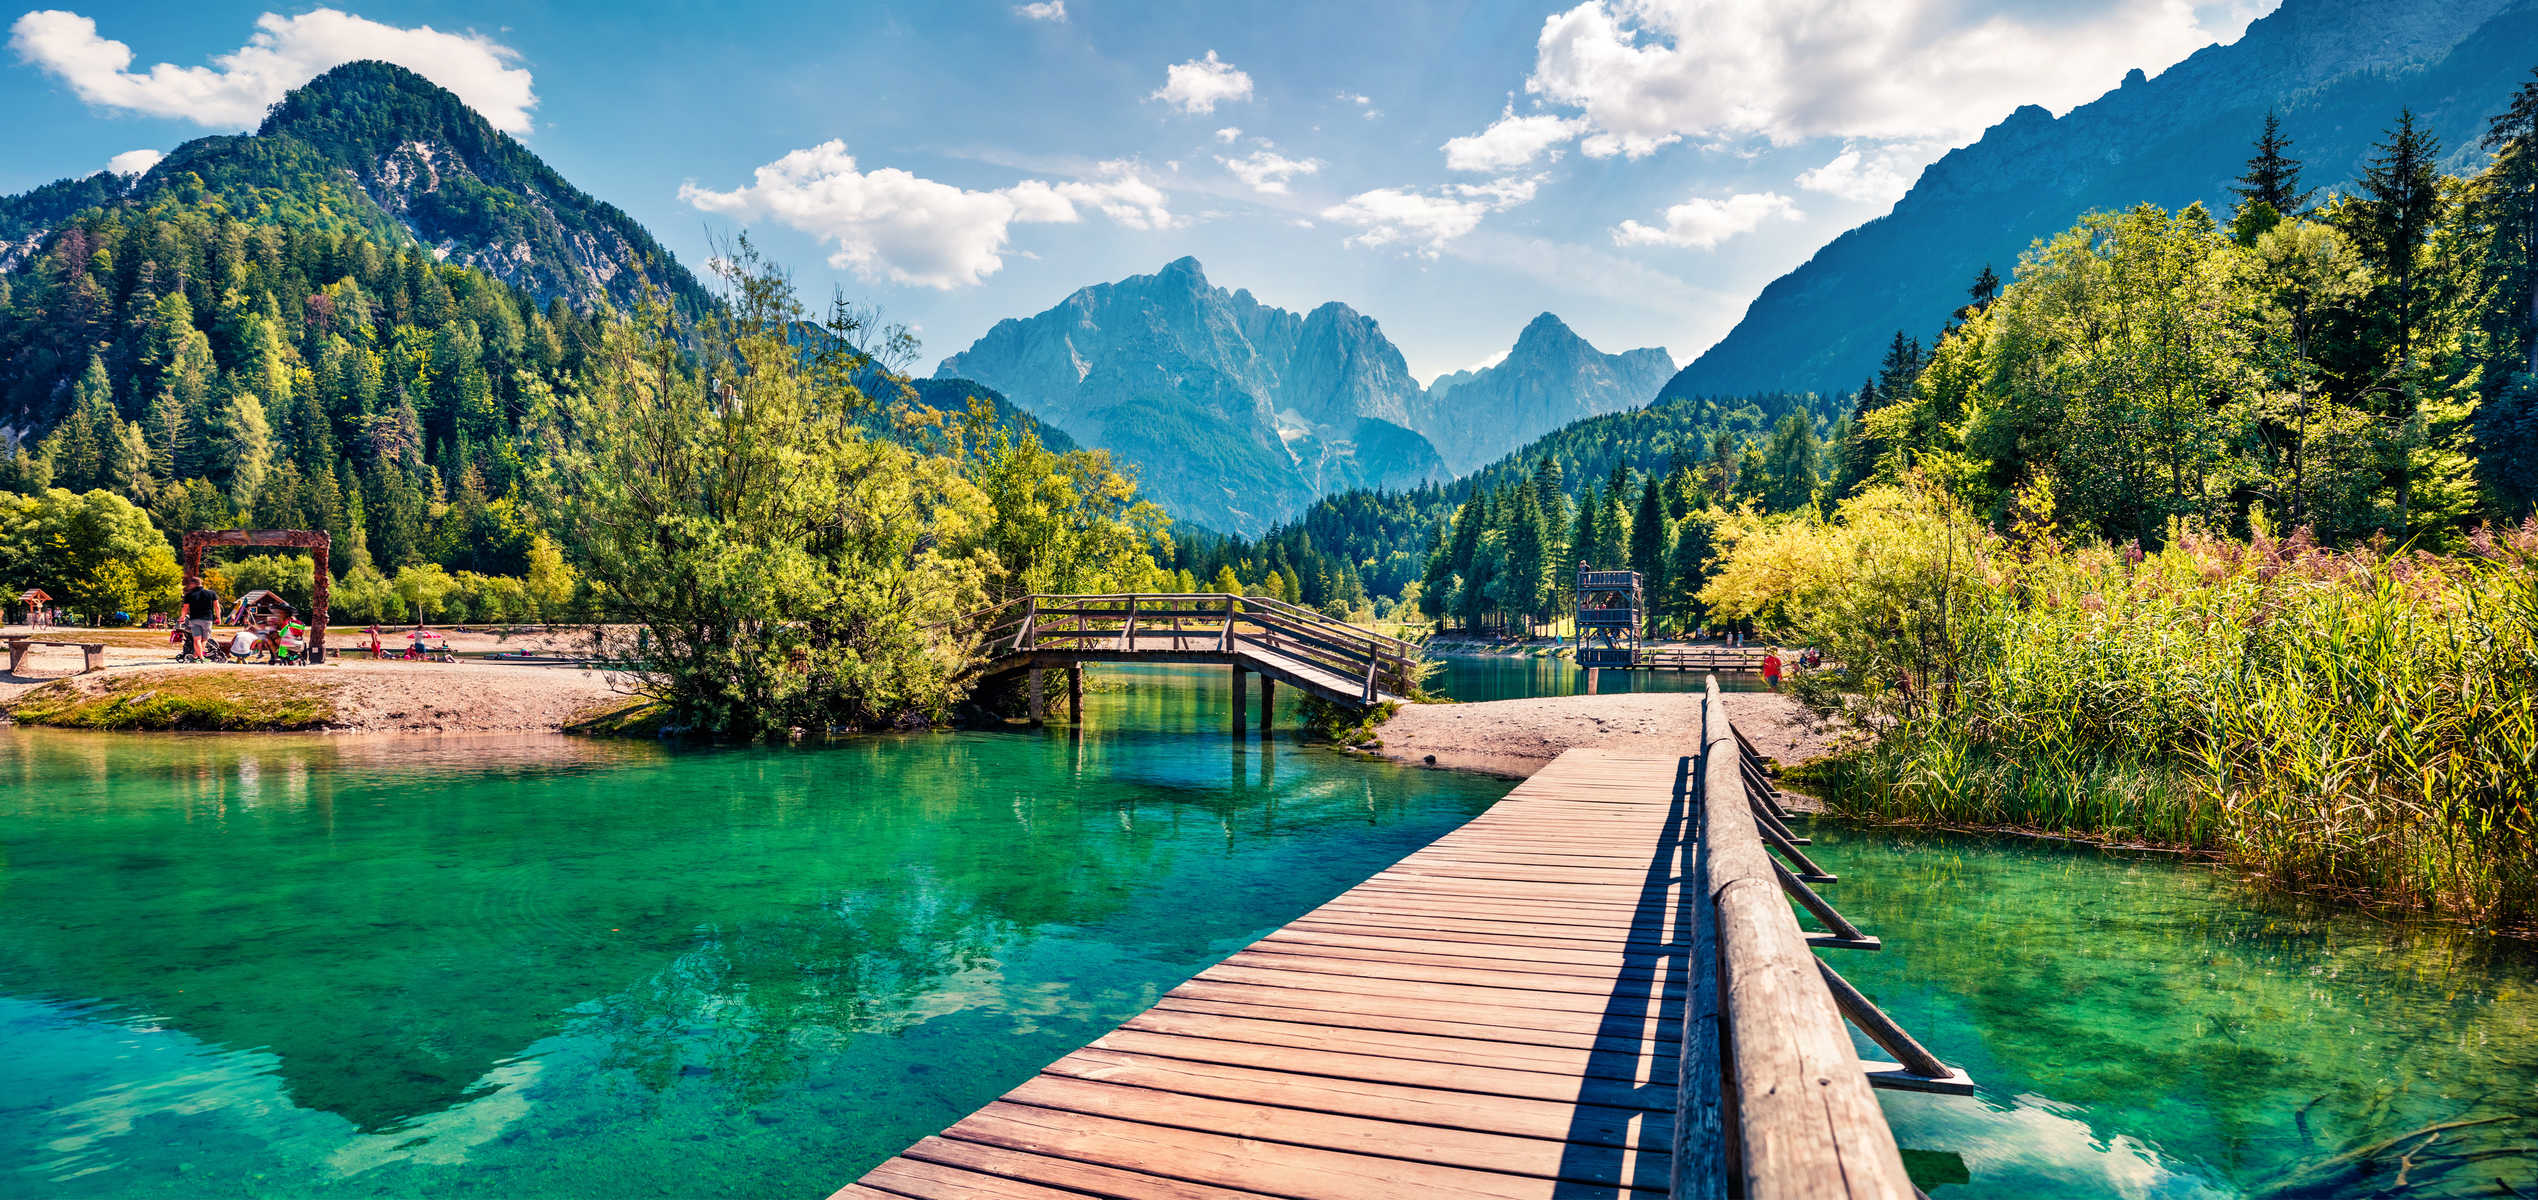 Pont en bois sur le lac Jasna. Vue panoramique sur les Alpes juliennes, parc national du Triglav. , Slovénie, Europe